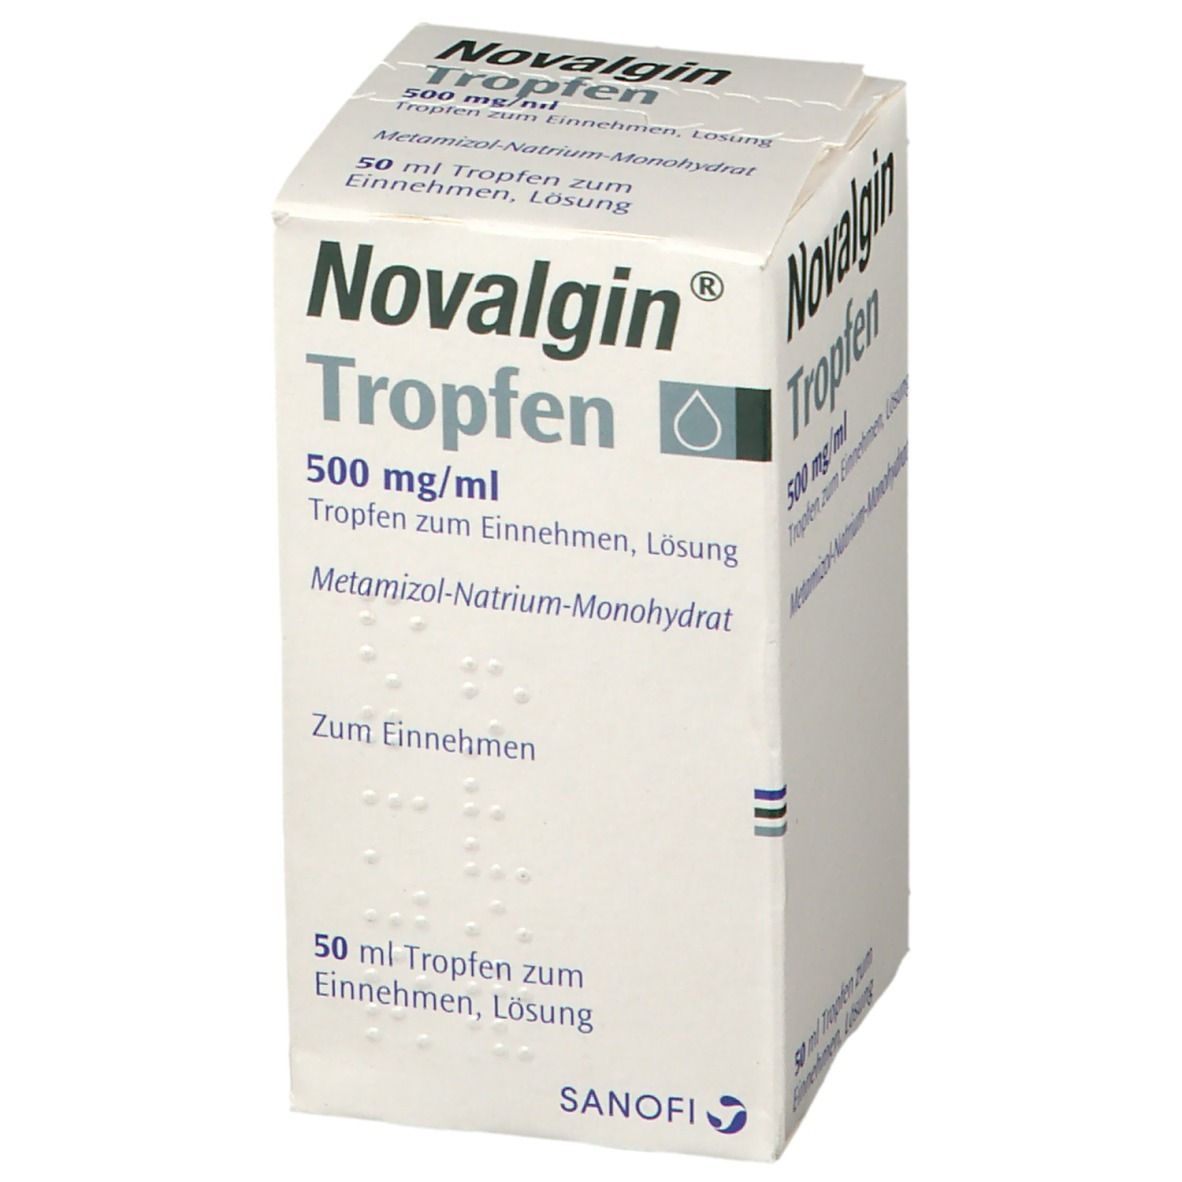 Novalgin®